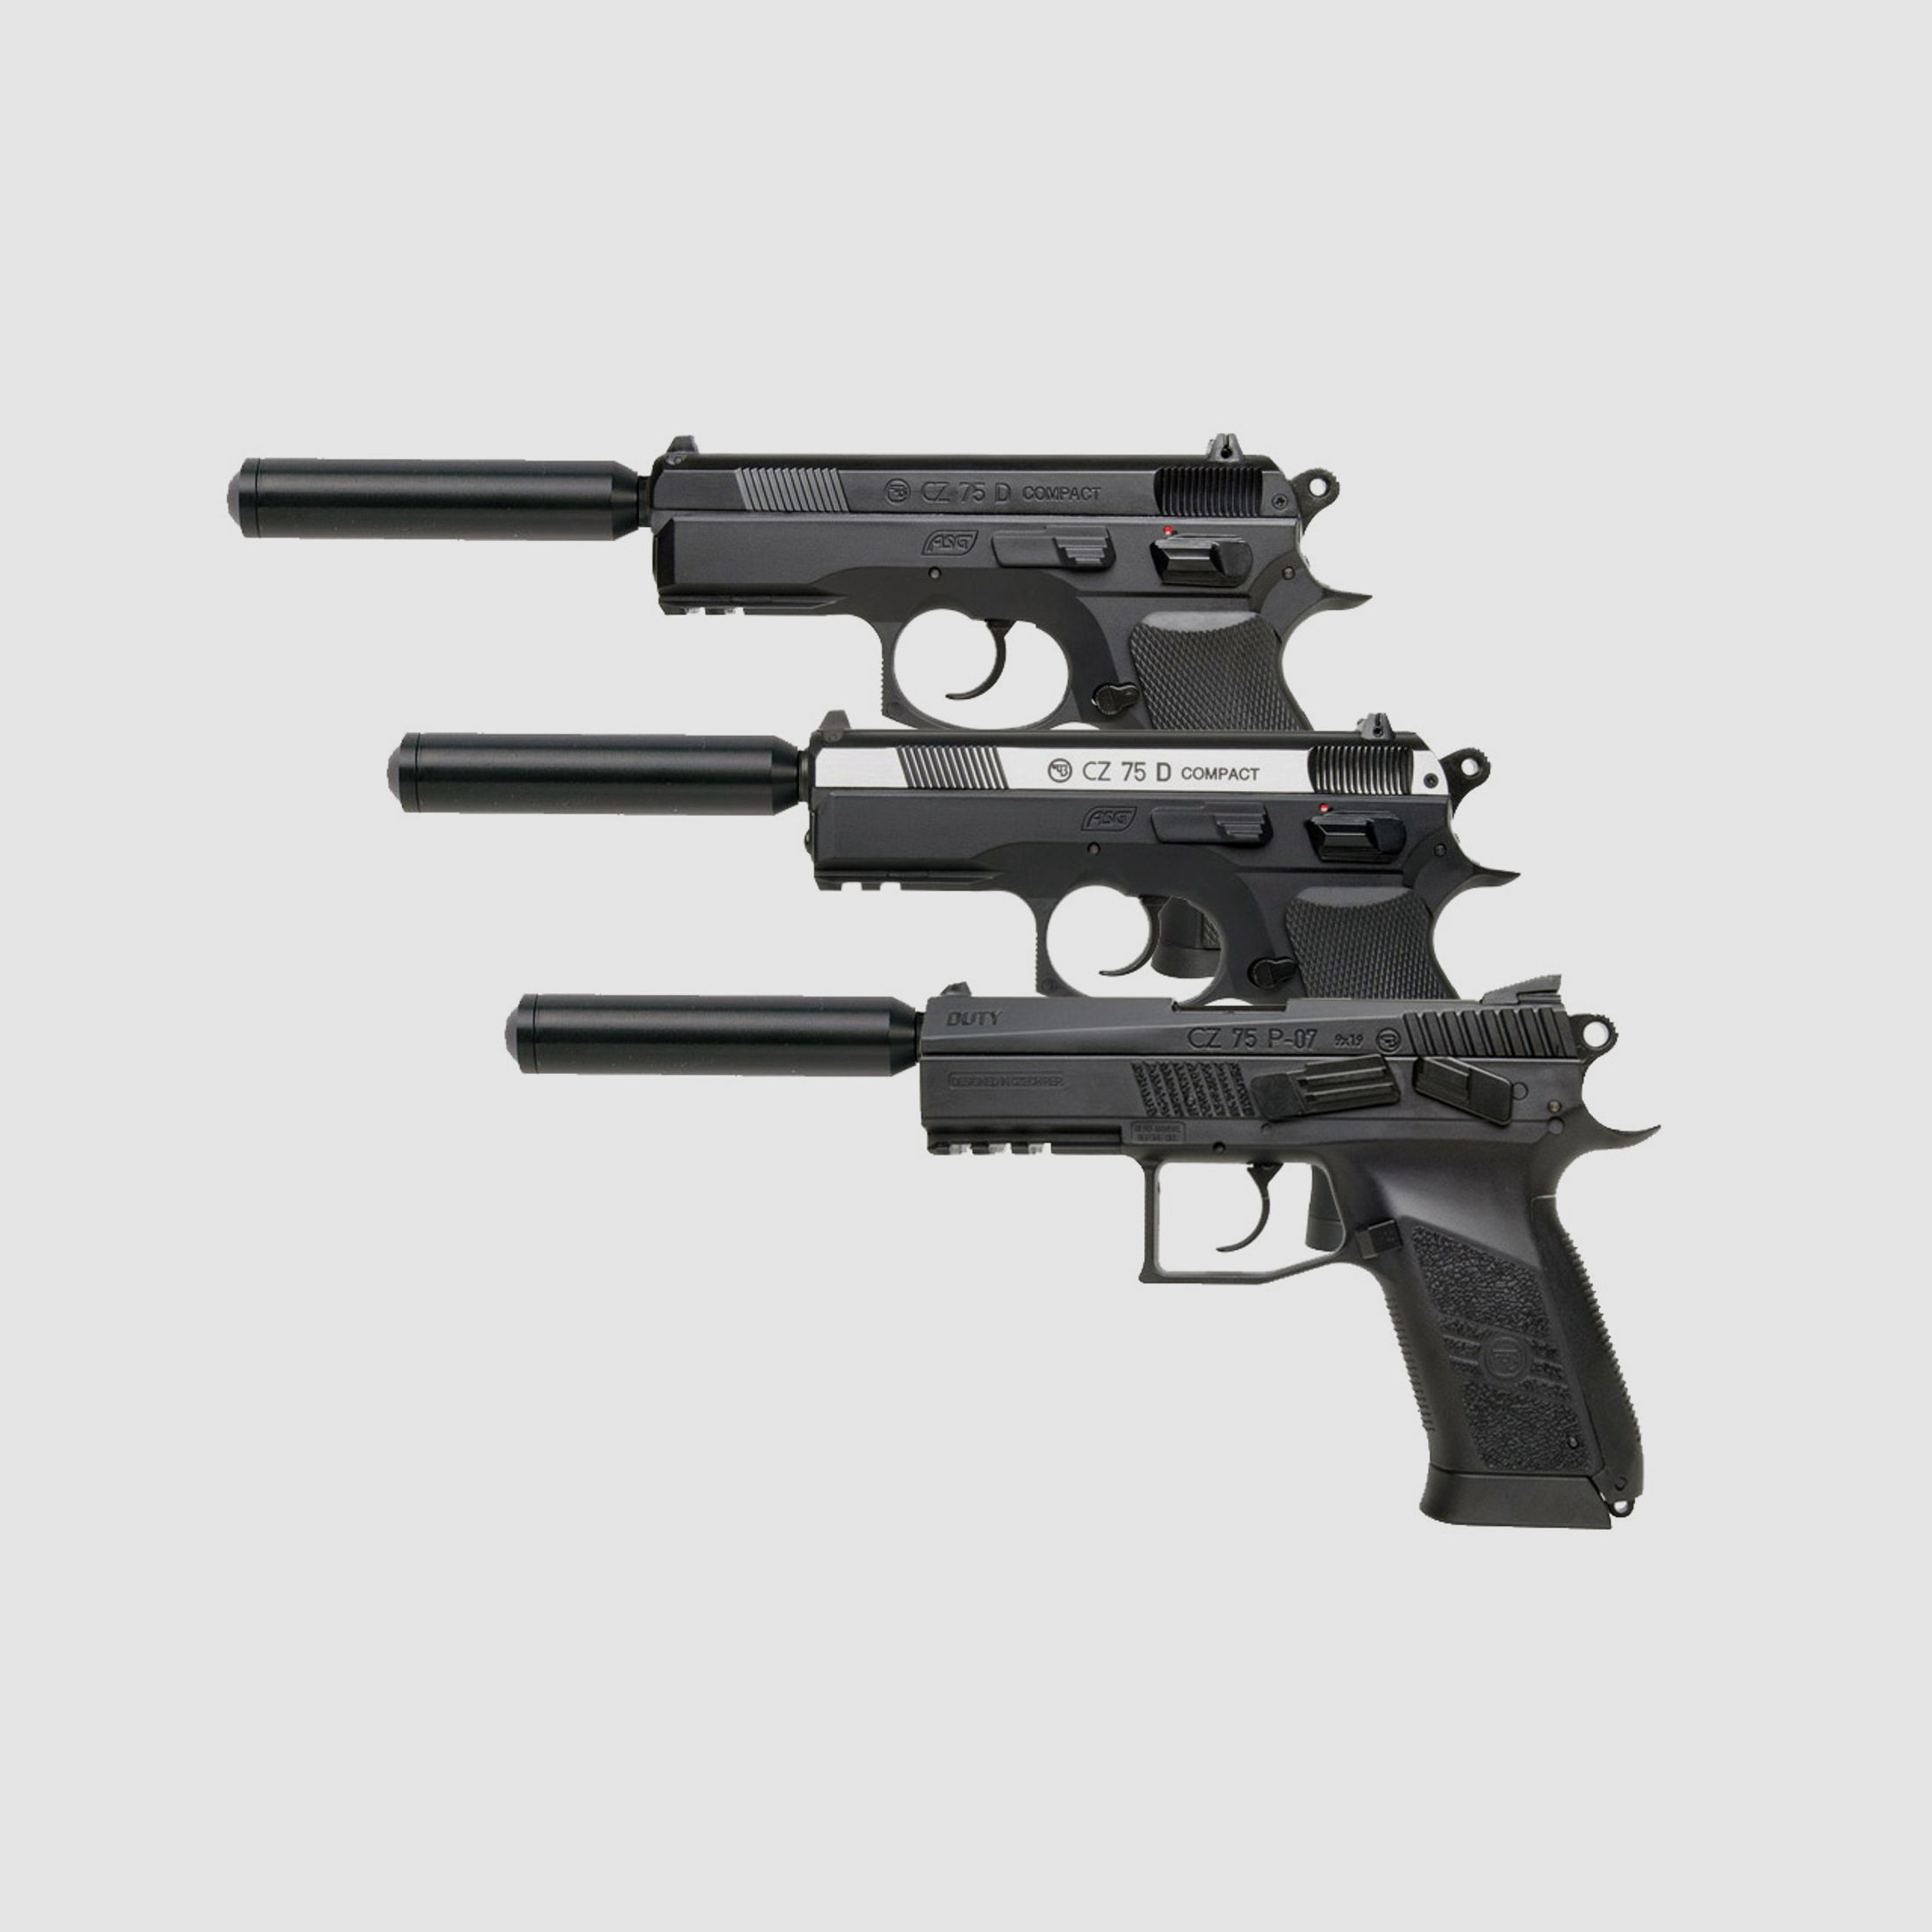 SWS SchalldĂ¤mpferadapter 1/2 Zoll UNF fĂĽr CO2 Pistolen CZ Modelle 75